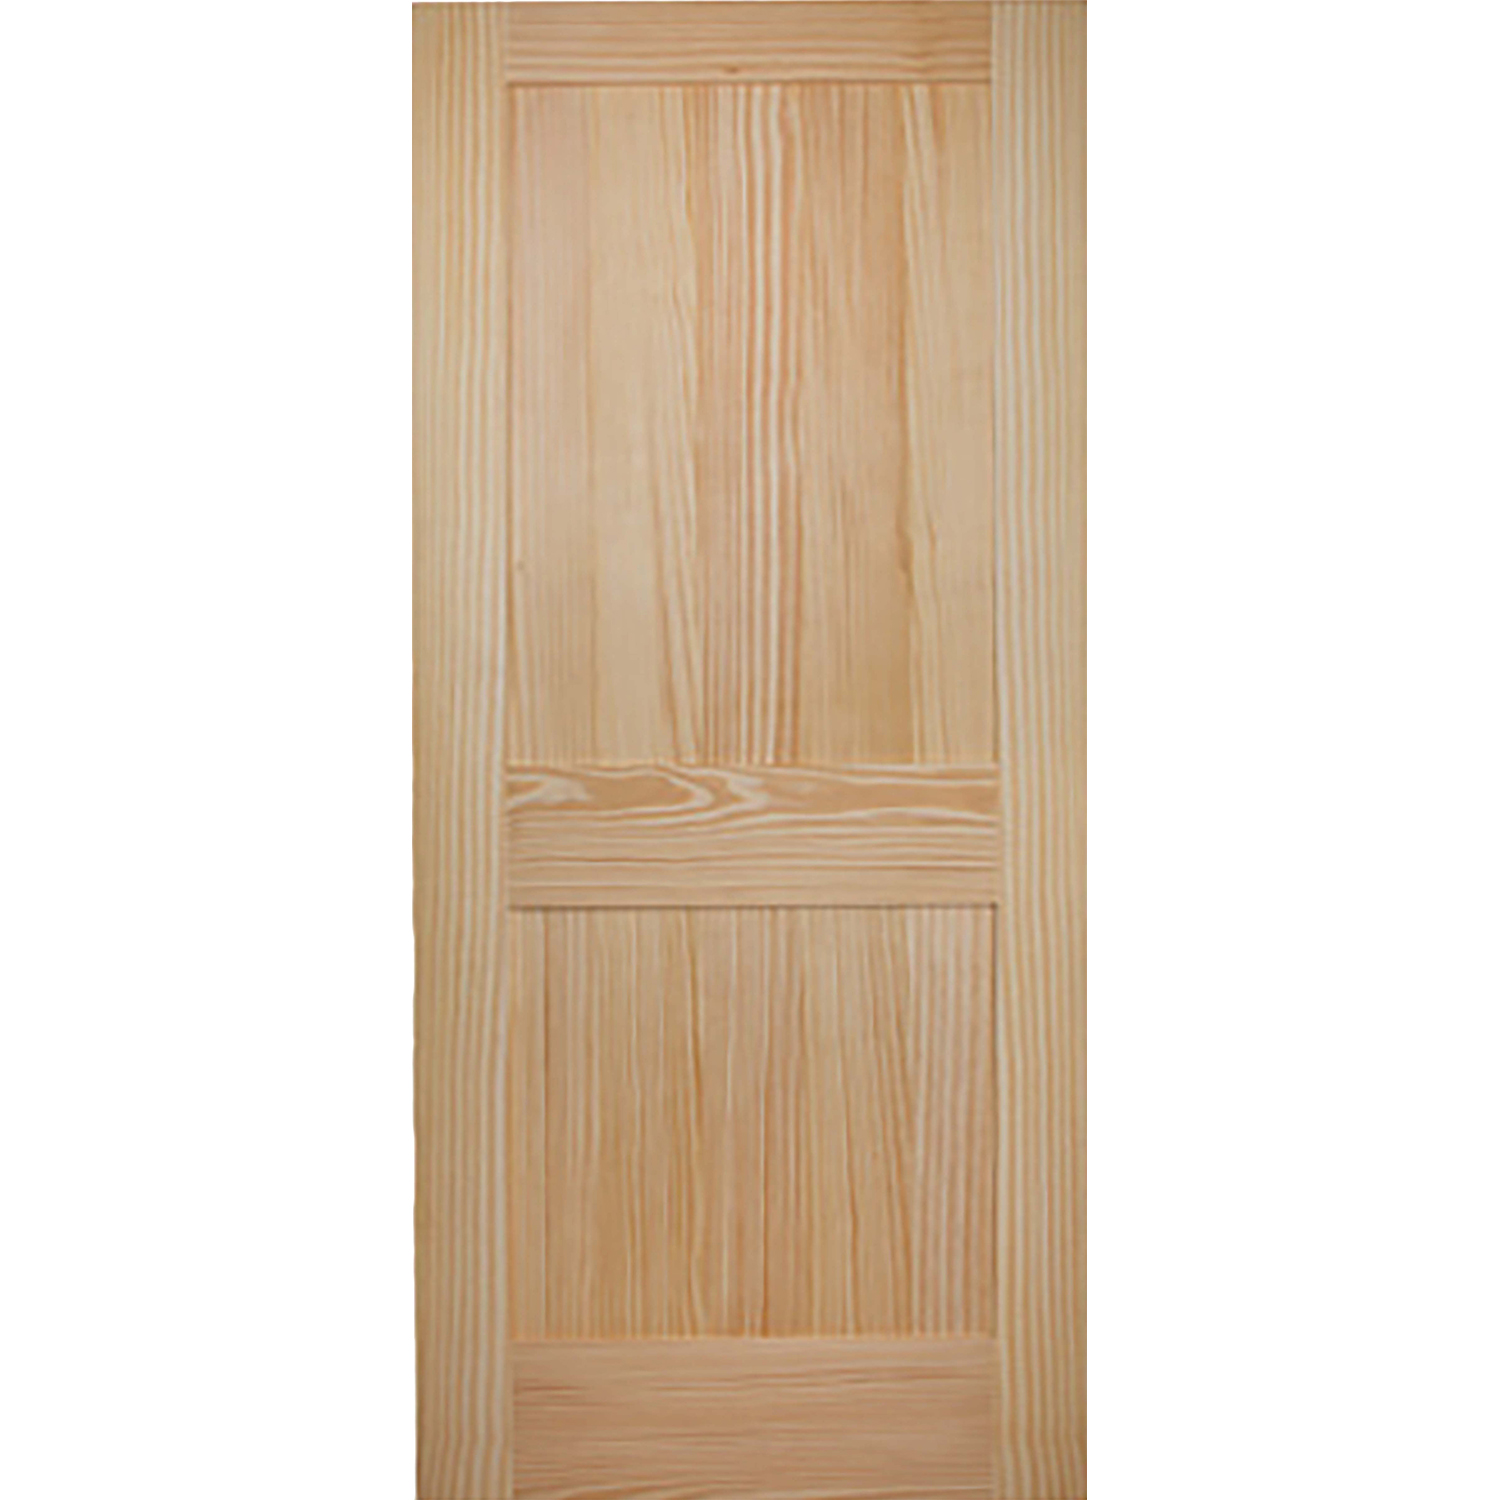 2 Panel 36 x 80 x 1 3/8 - Knotty Pine Door Shaker